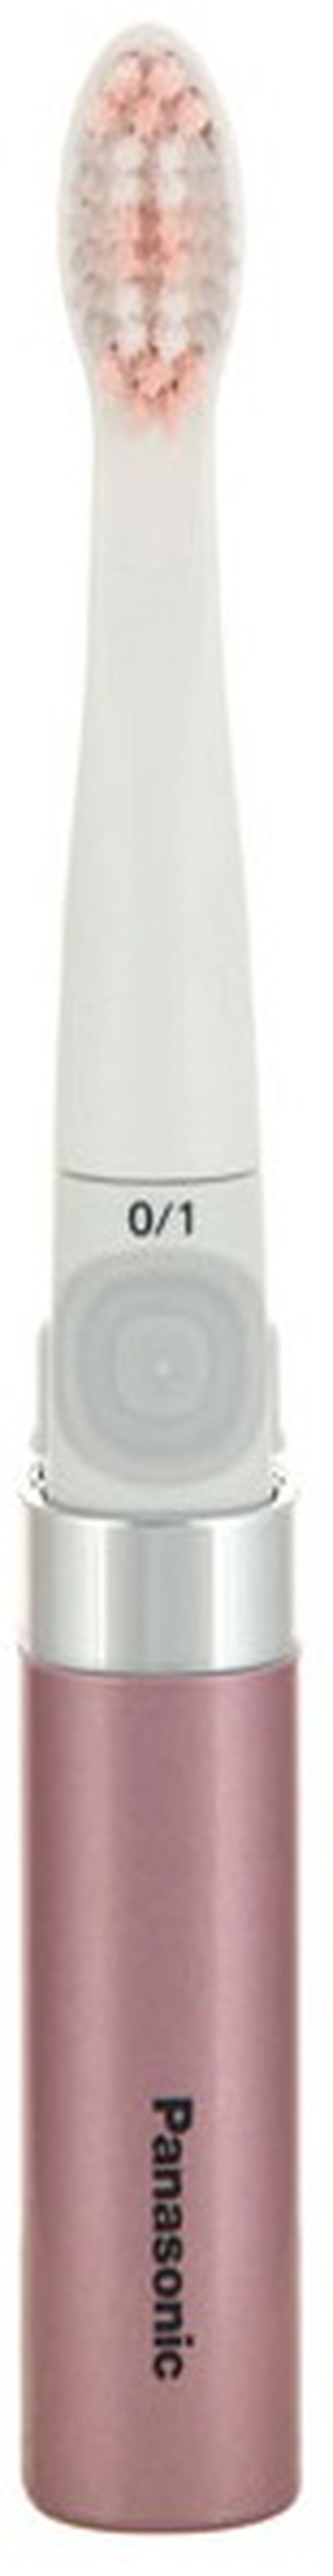 Зубная щетка электрическая Panasonic EW-DS90-K520 розовый/белый фото